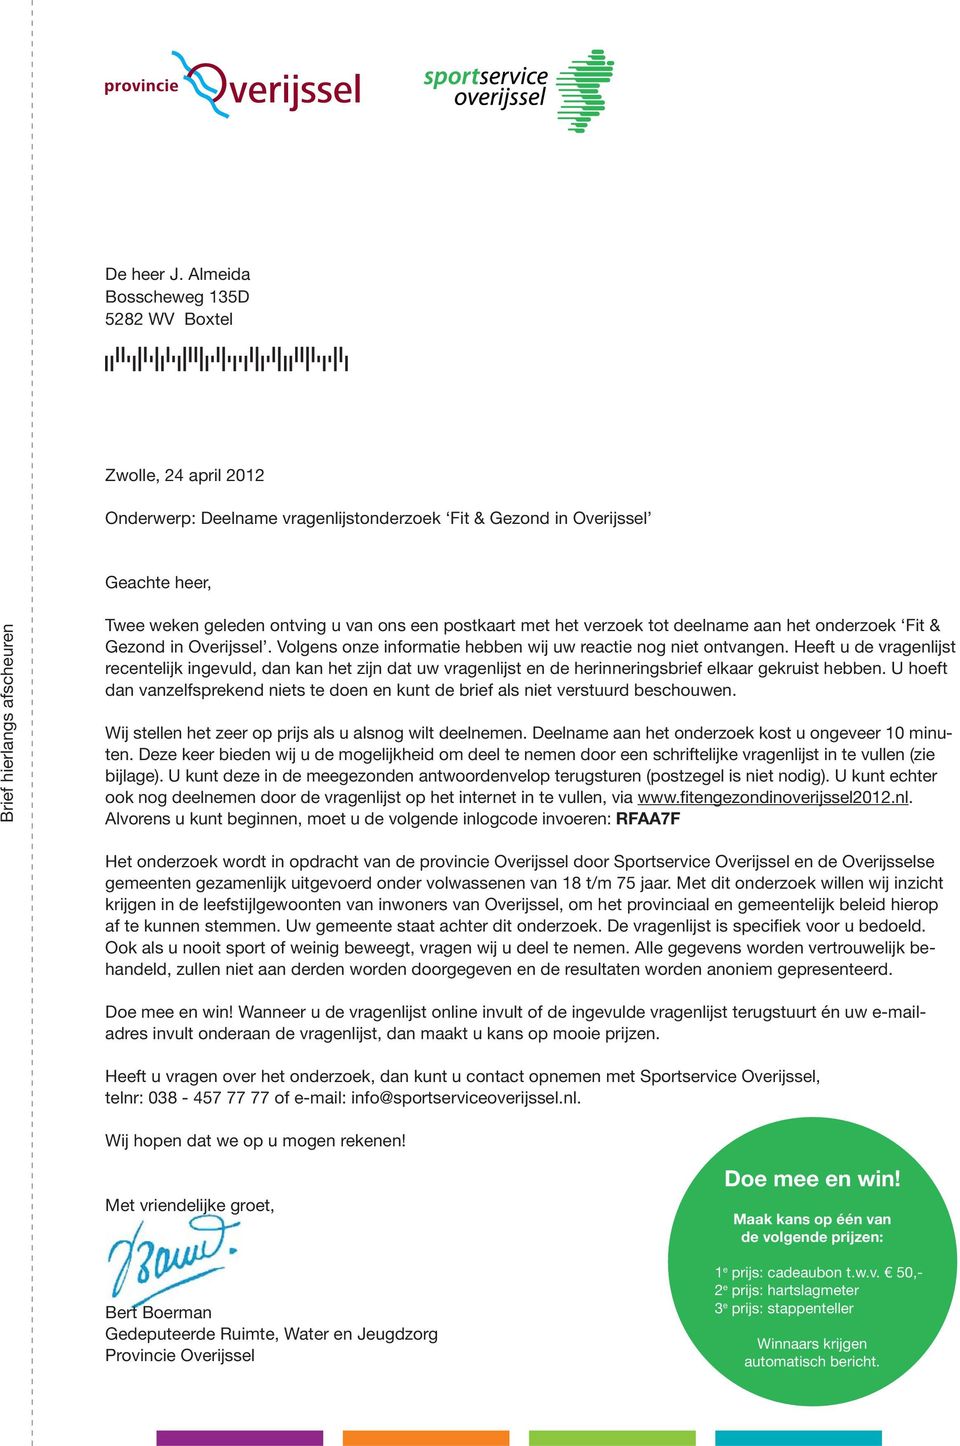 geleden ontving u van ons een postkaart met het verzoek tot deelname aan het onderzoek Fit & Gezond in Overijssel. Volgens onze informatie hebben wij uw reactie nog niet ontvangen.